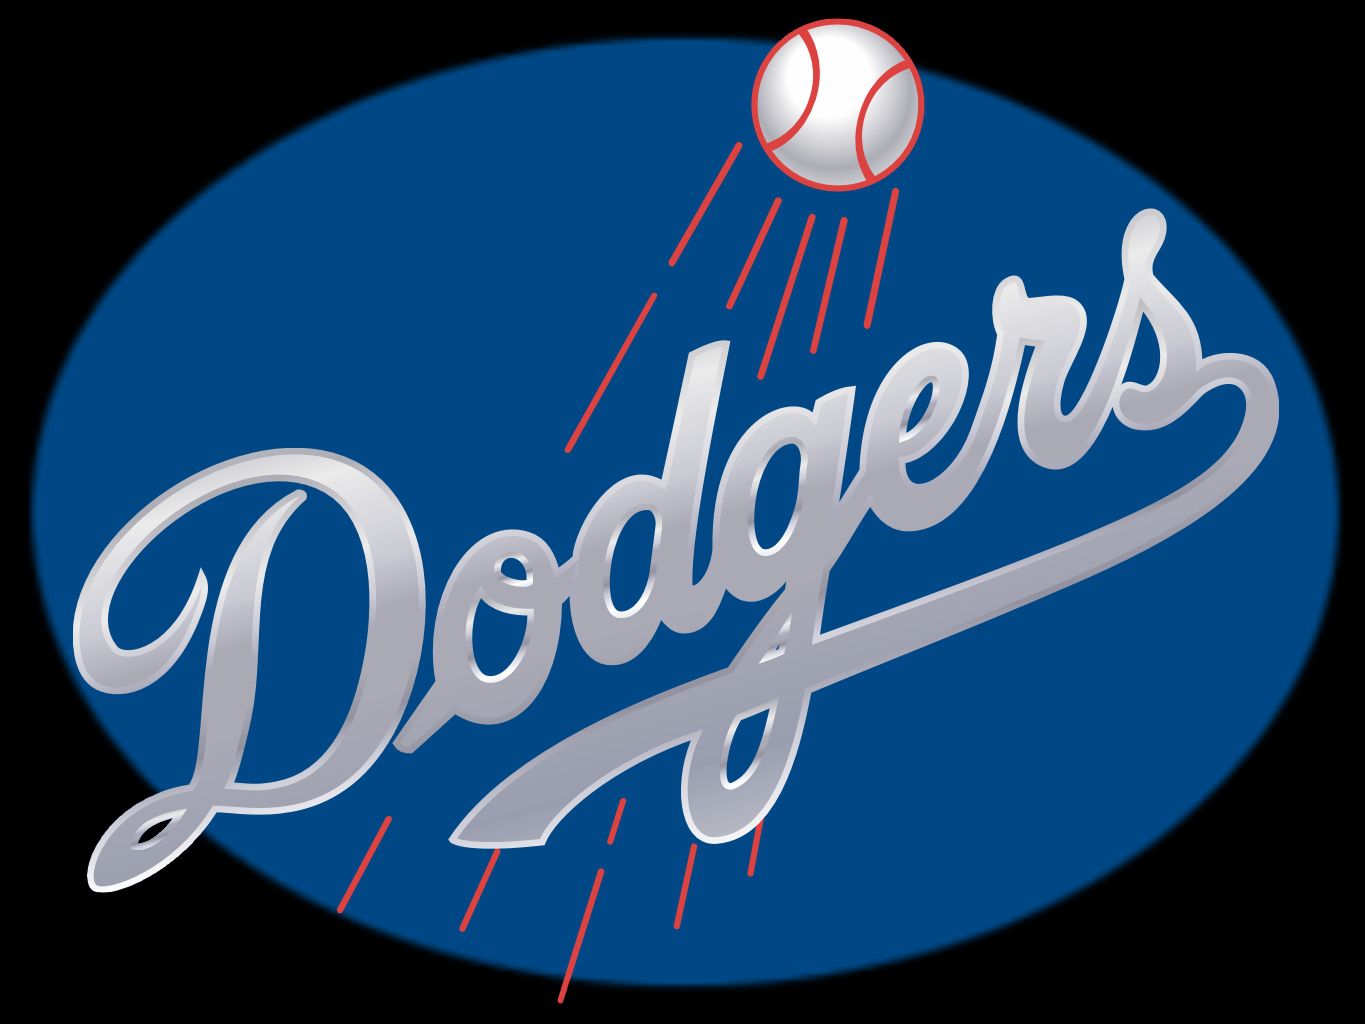 Dodgers Puter Wallpaper Desktop Background Id